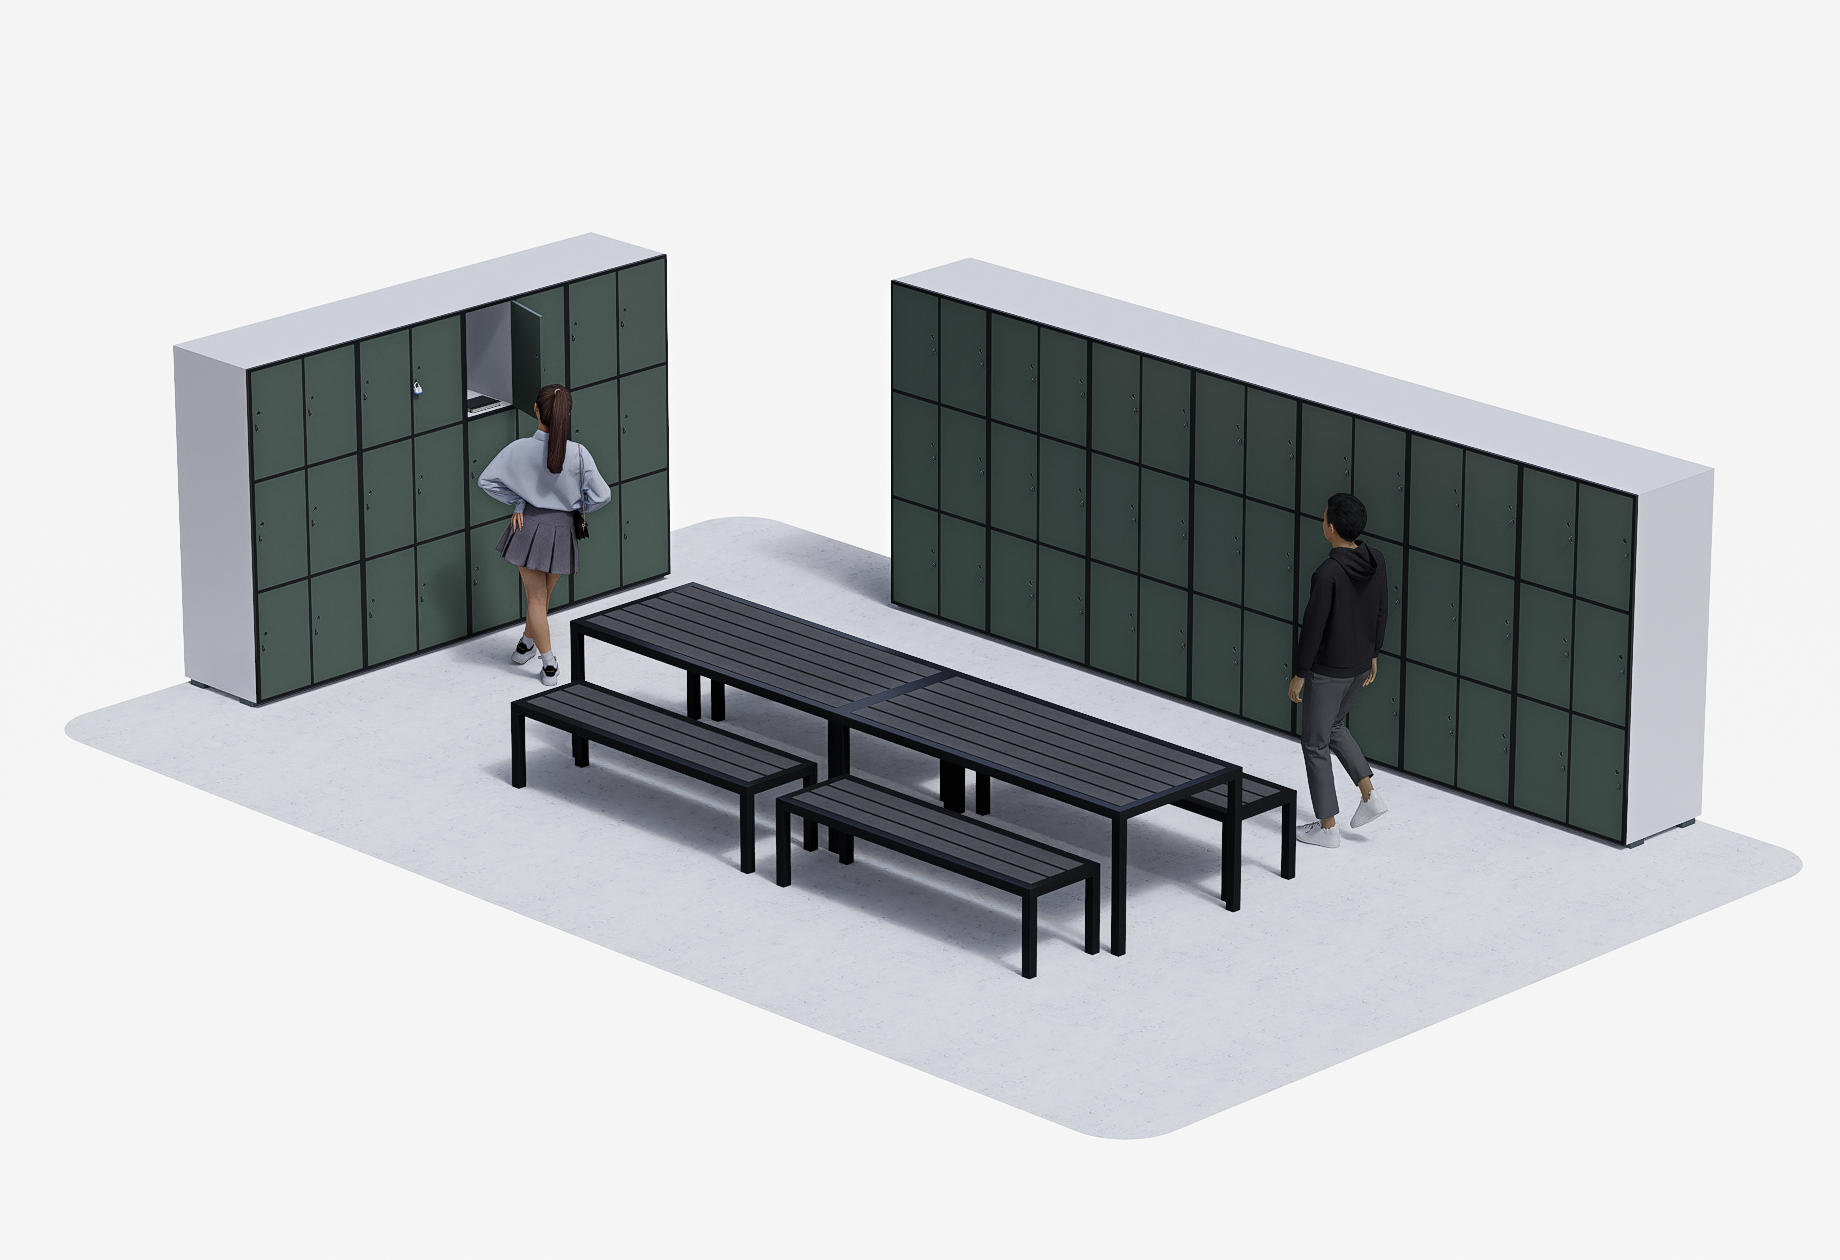 Locker Area Idea Concept #2 (2)